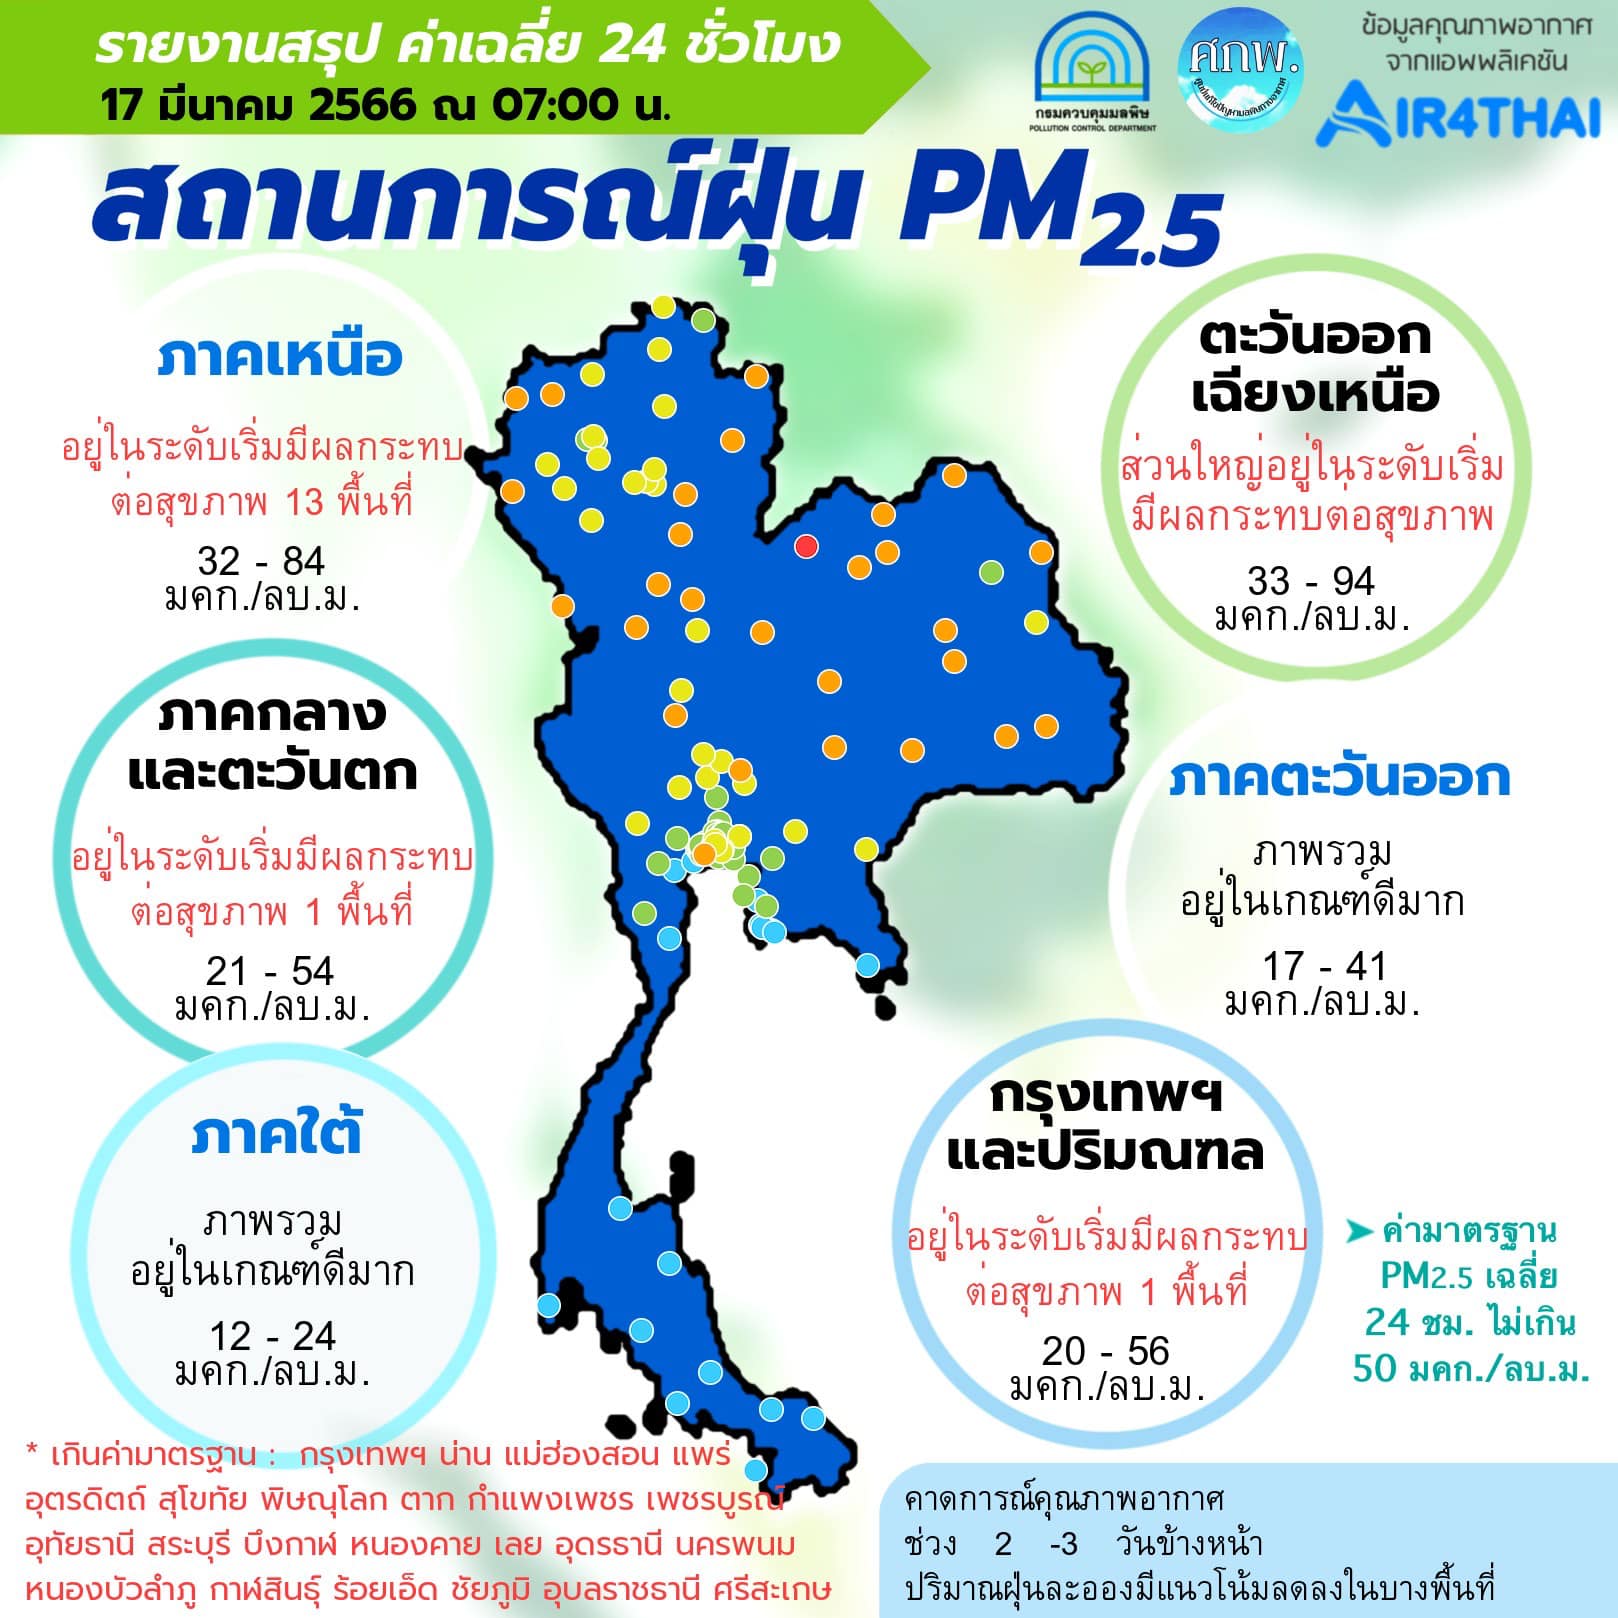 ศูนย์แก้ไขปัญหามลพิษทางอากาศ รายงานการติดตามตรวจสอบคุณภาพอากาศ ประจำวันที่ 17 มีนาคม 2566